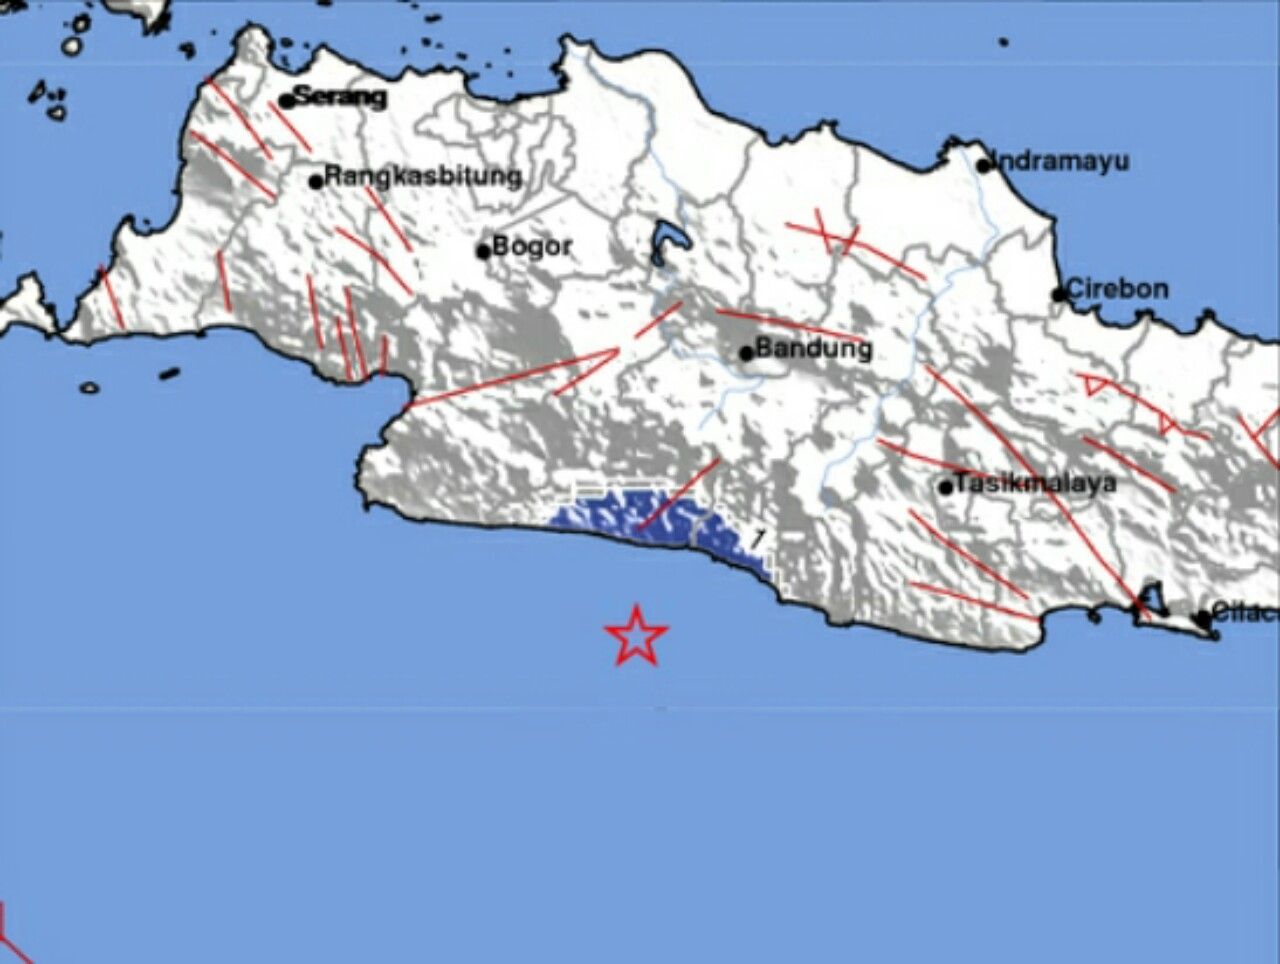 Pusat gempa bumi di Kabupaten Bandung berlokasi di laut, Senin 19 Juli 2021 